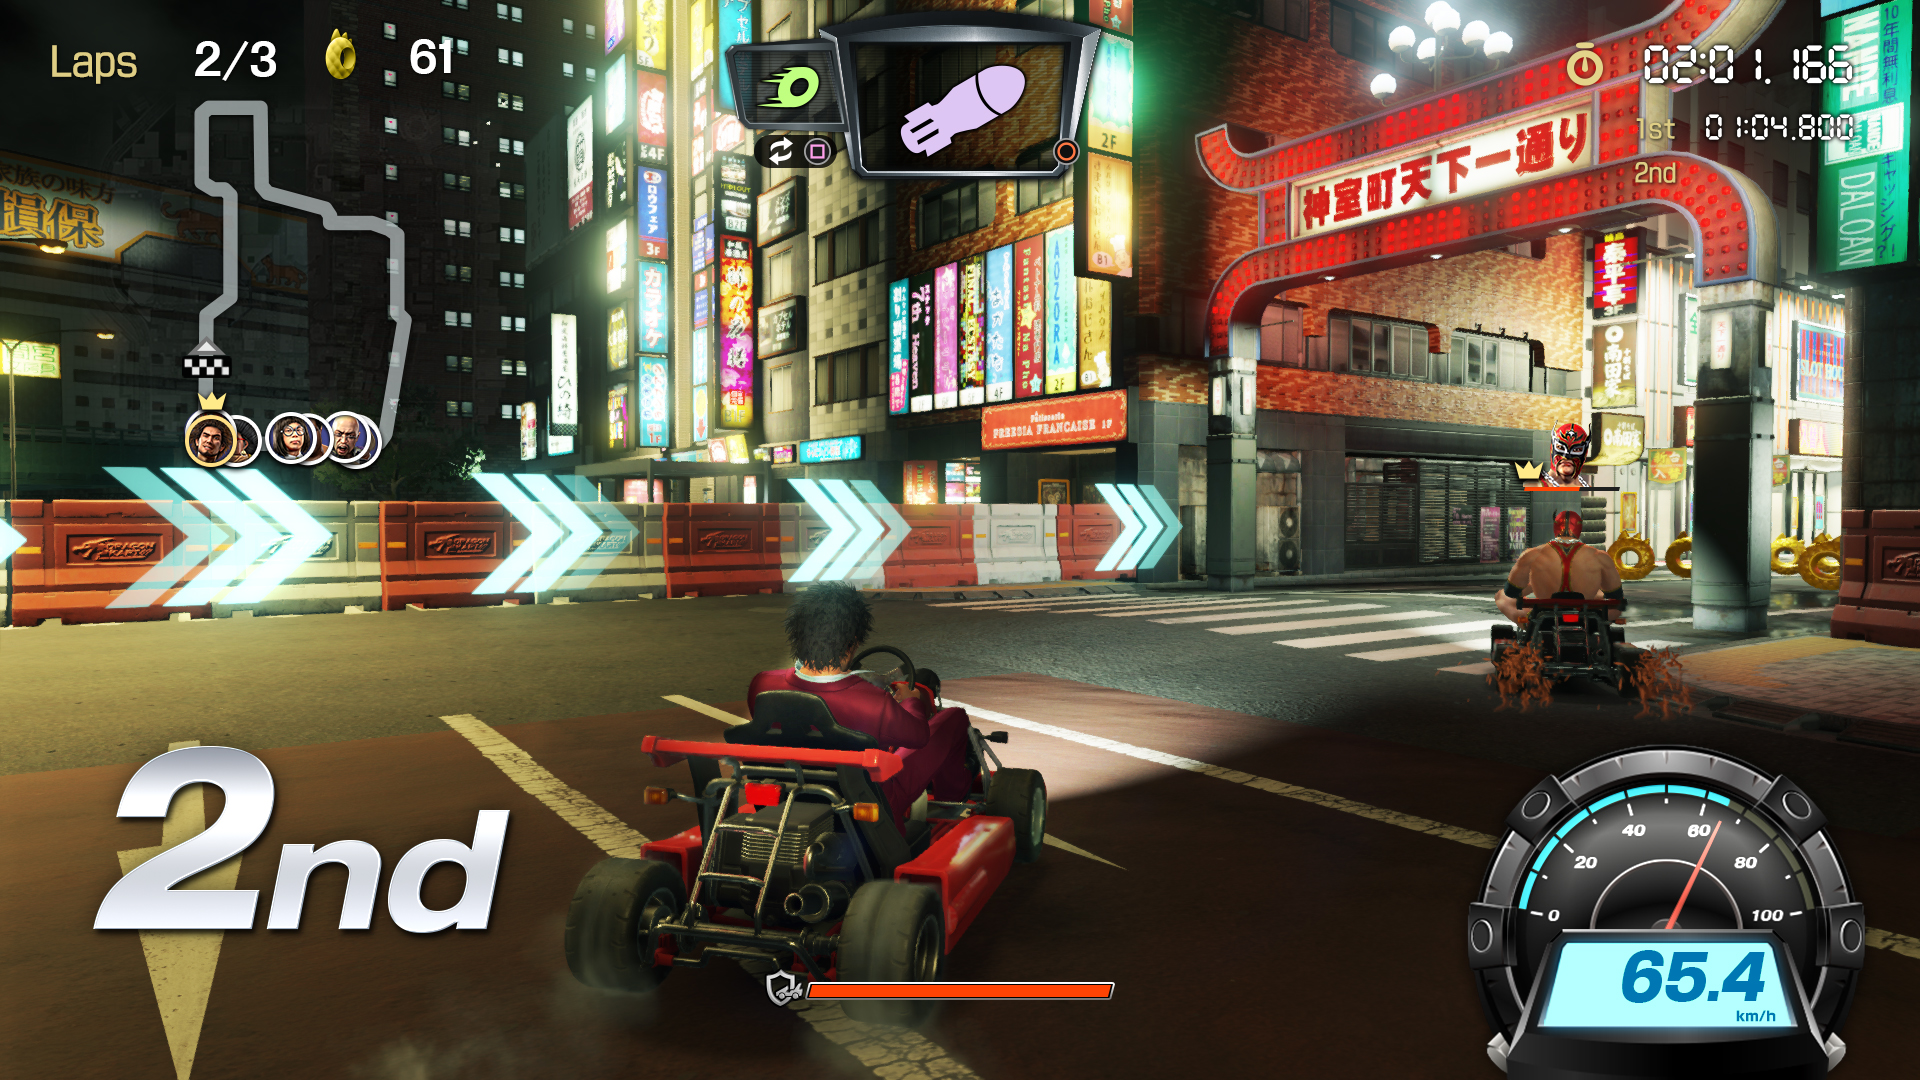 狂飙横滨街头！《如龙 7》新玩法“龙卡丁车”截图公开